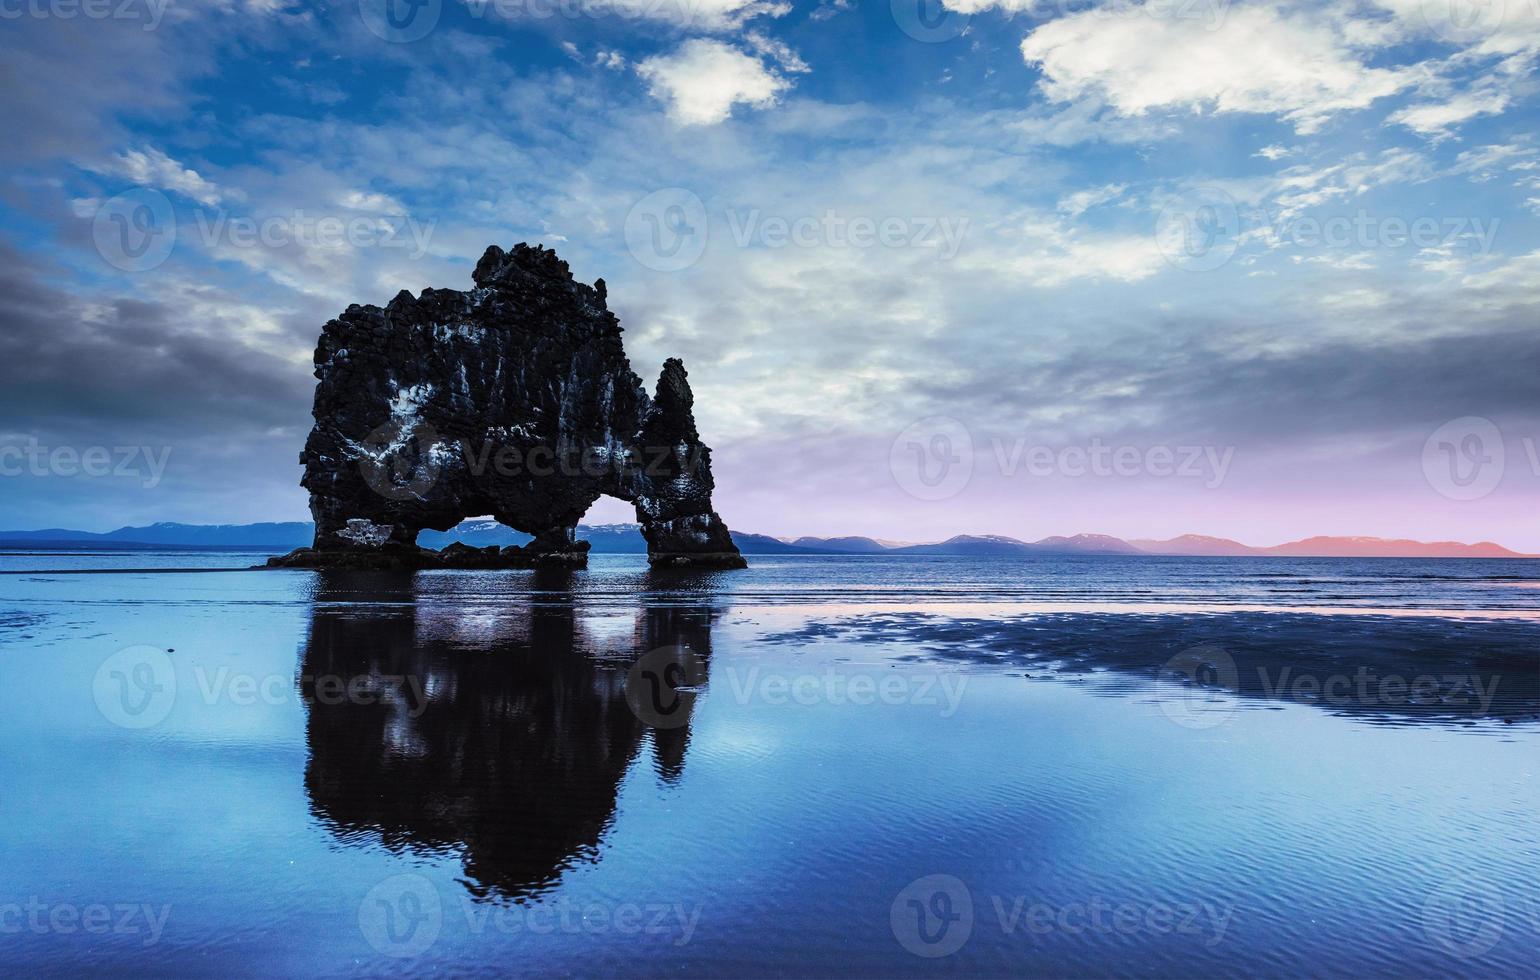 hvitserkur è una roccia spettacolare nel mare foto